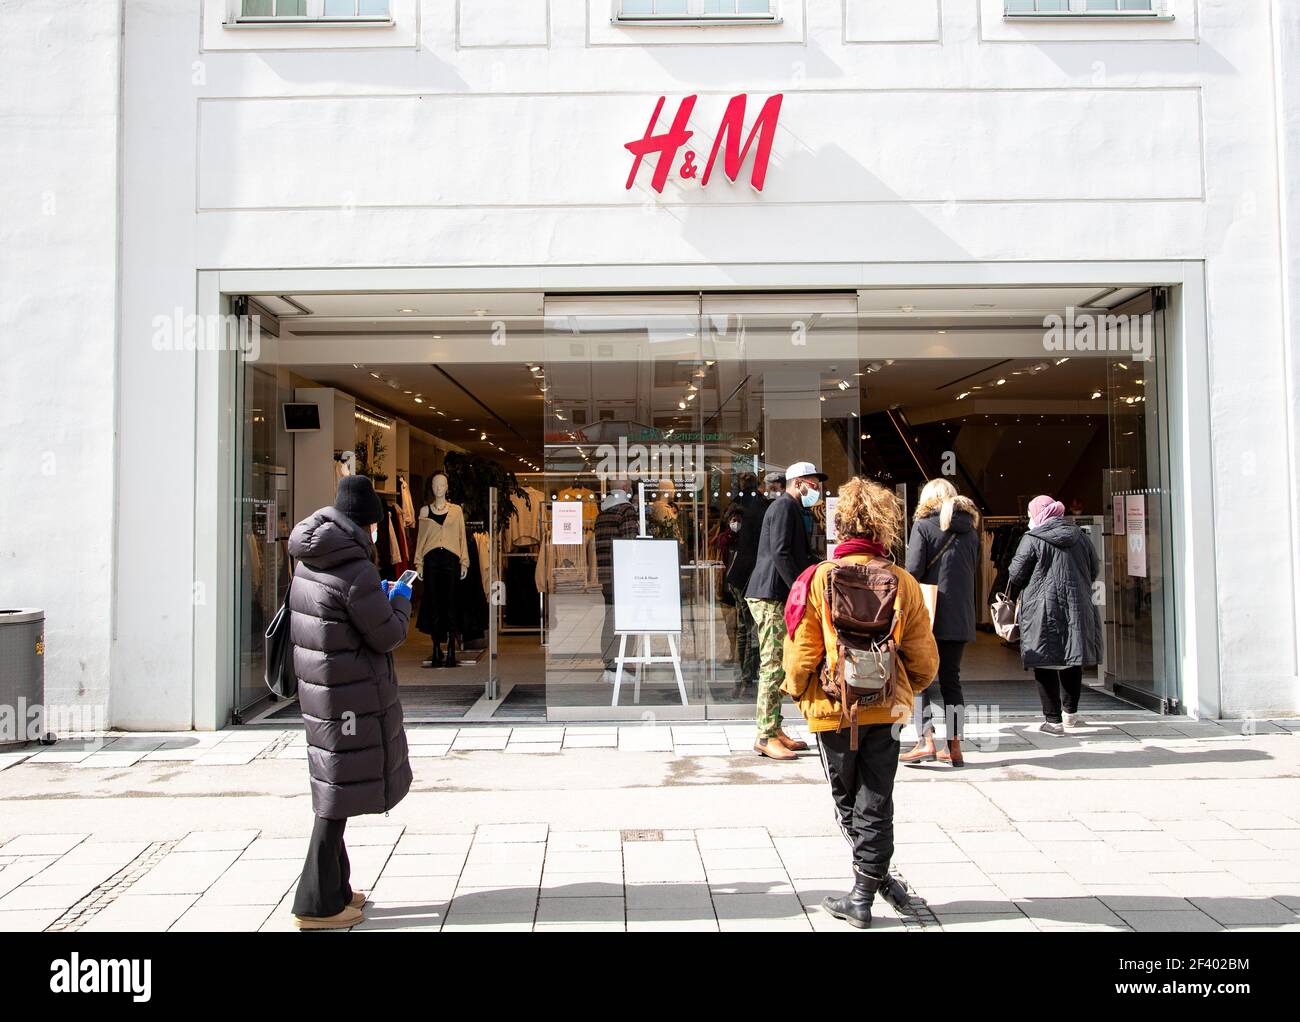 Slange for the H&M. Menschen shoppen in München am 18,3.2021. - am 18 2021.  März geht man in München einkaufen. (Foto von Alexander Pohl/Sipa USA  Stockfotografie - Alamy